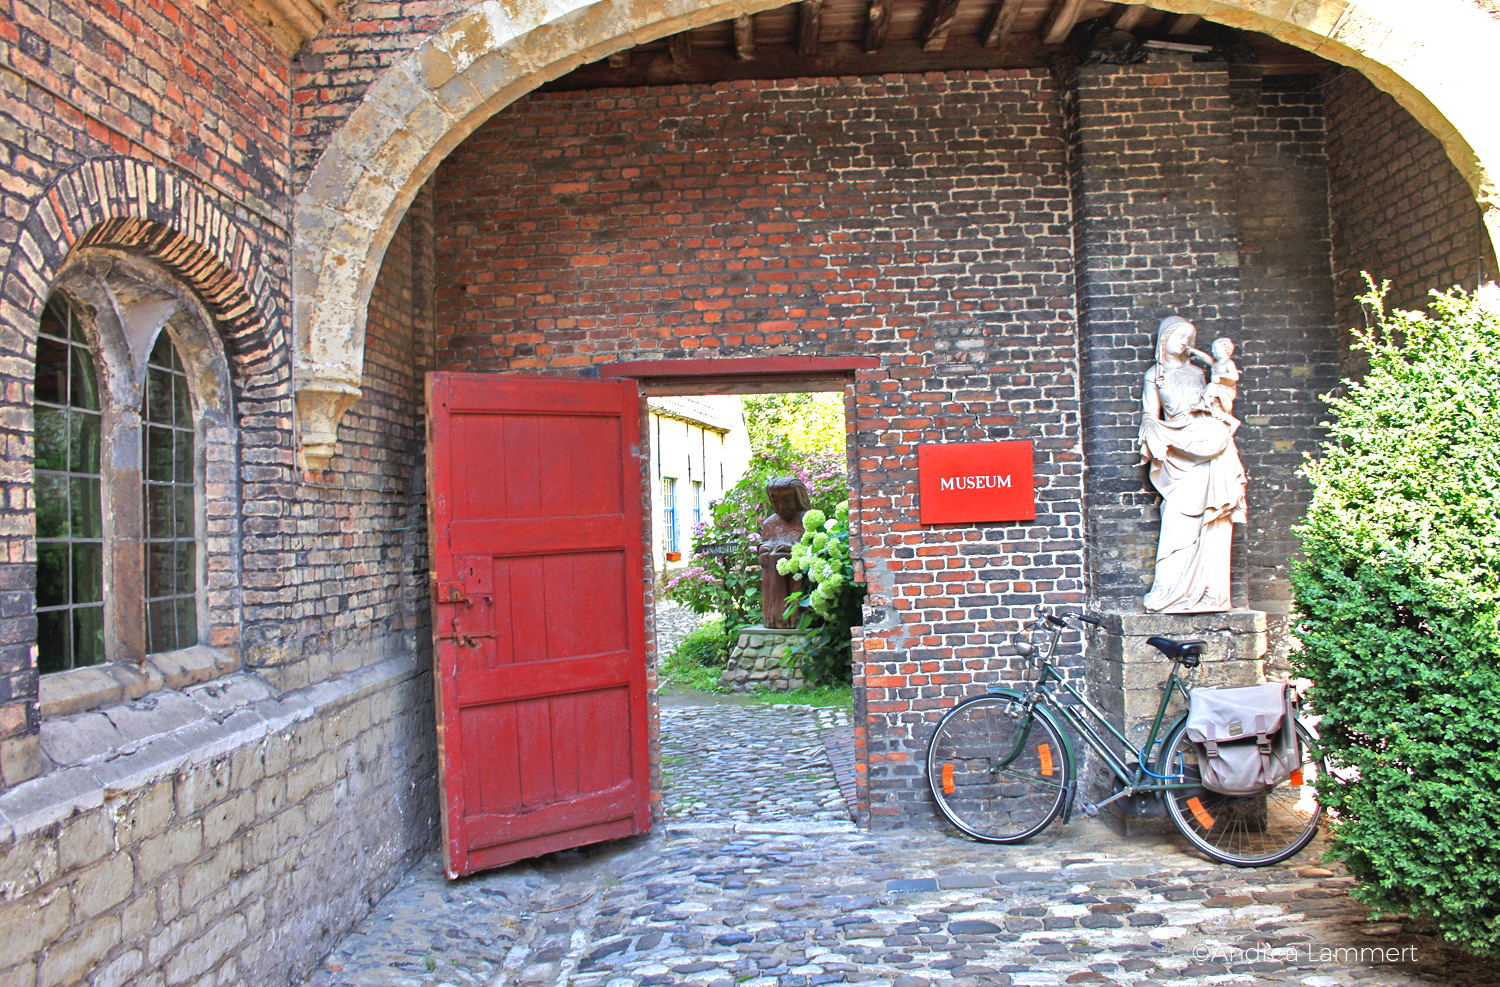 Fahrradfahren in Brügge, Stadtführung mit dem Fahrrad, Flandern, Belgien